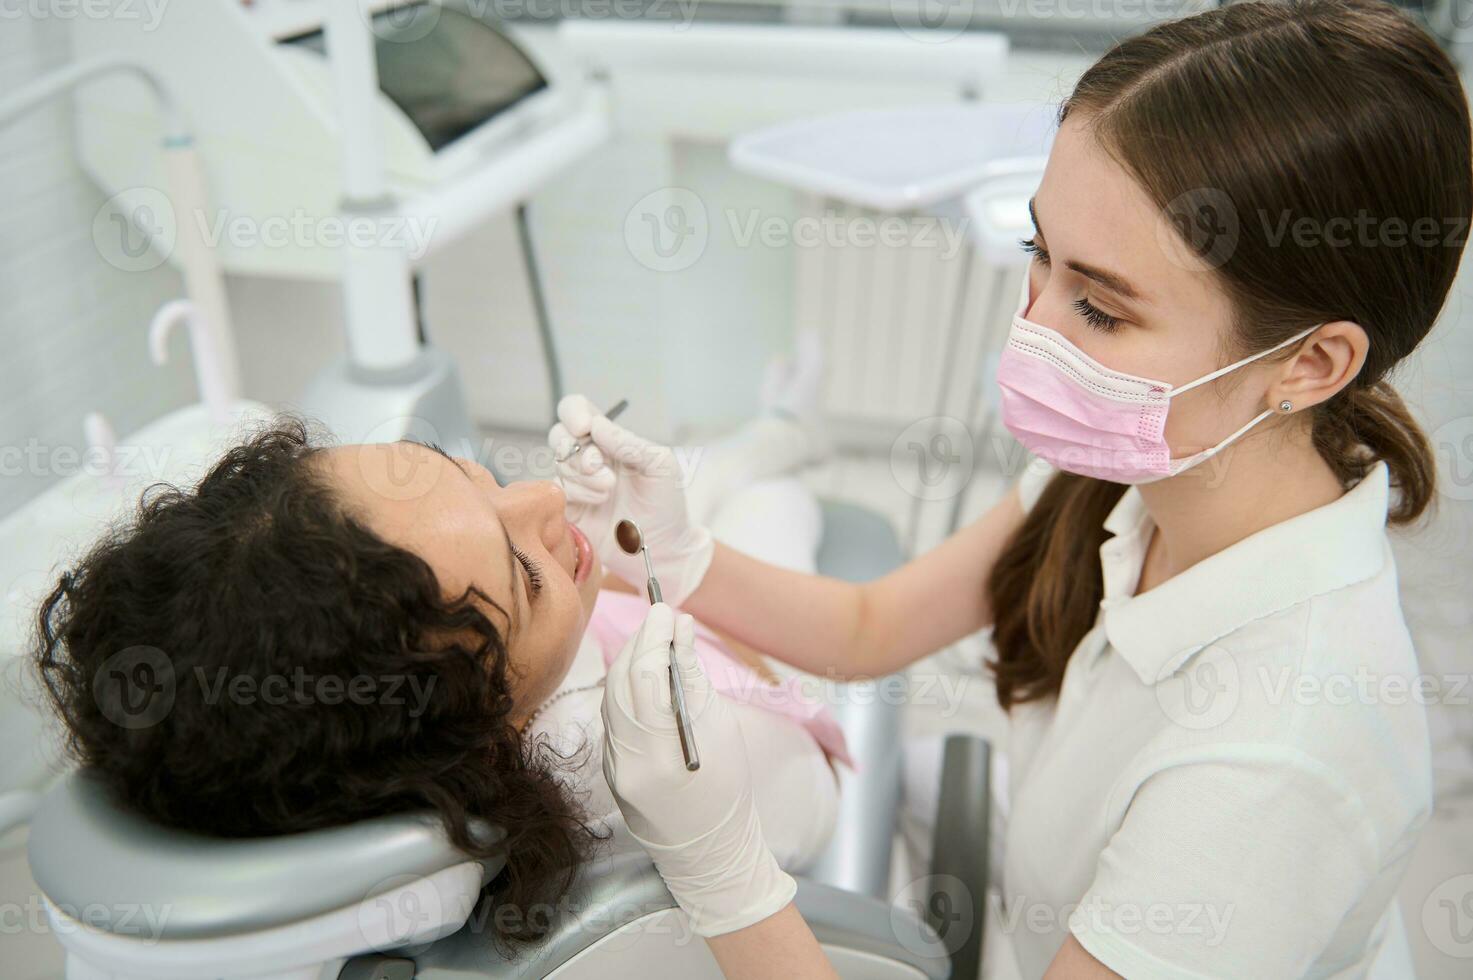 tandarts hygiënist in medisch beschermend masker onderzoeken de mondeling holte van een vrouw geduldig met steriel roestvrij staal tandheelkundig spiegel en sonde in tandheelkunde kliniek gedurende gepland medisch controle foto